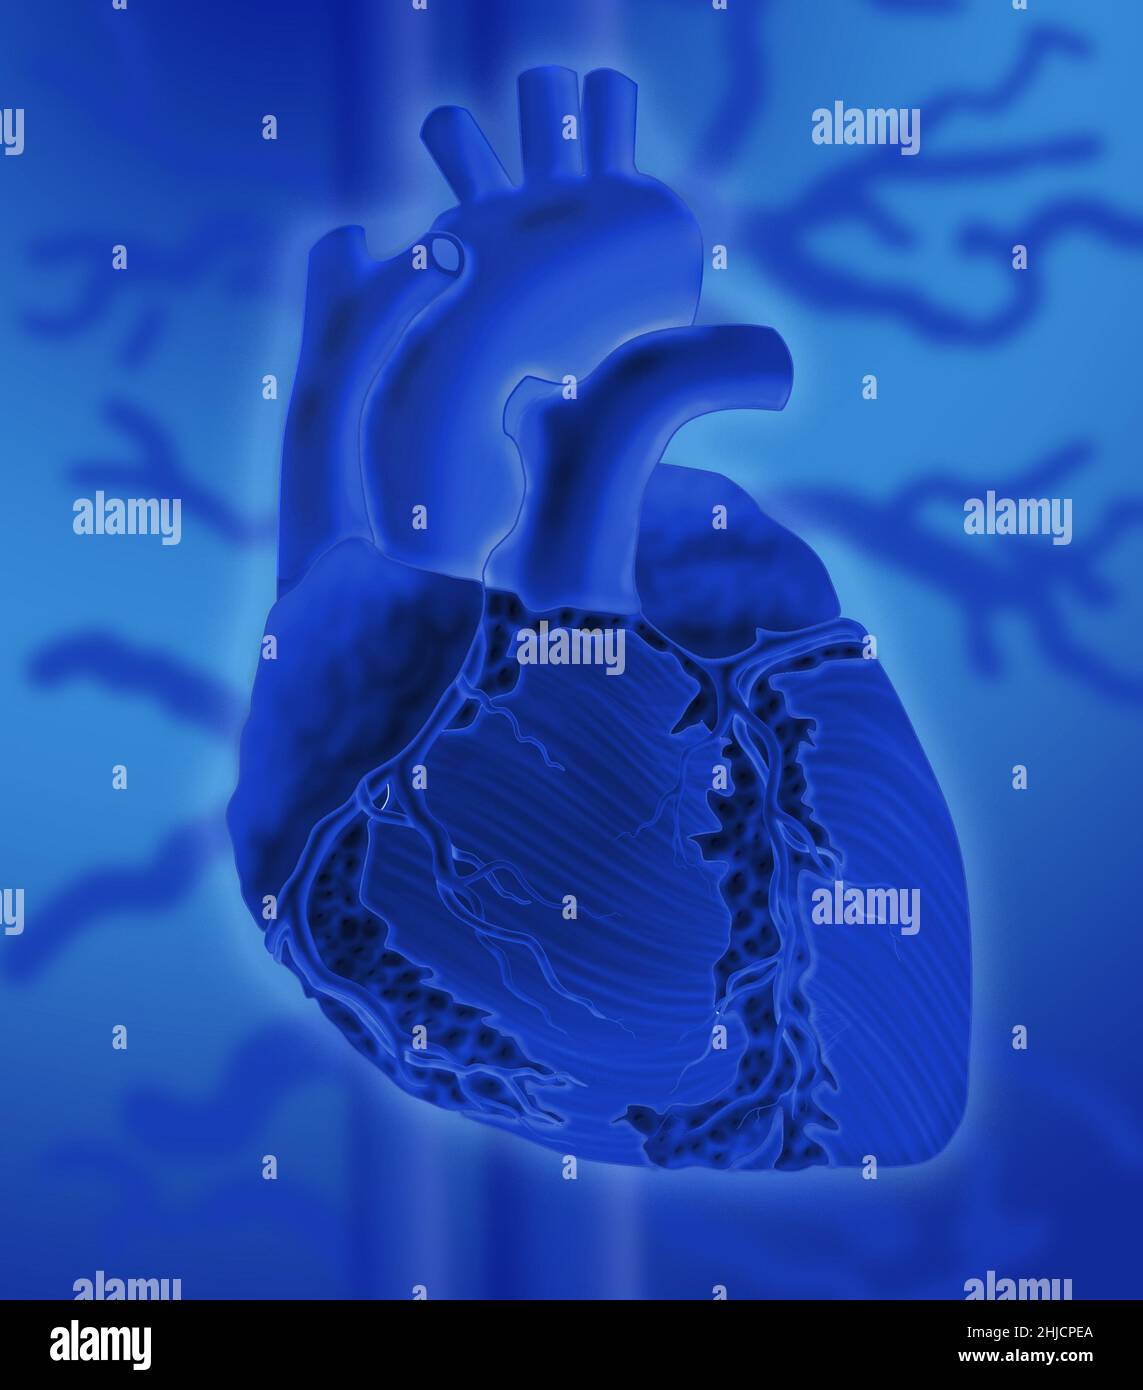 Immagine concettuale del cuore umano su sfondo colorato. Foto Stock